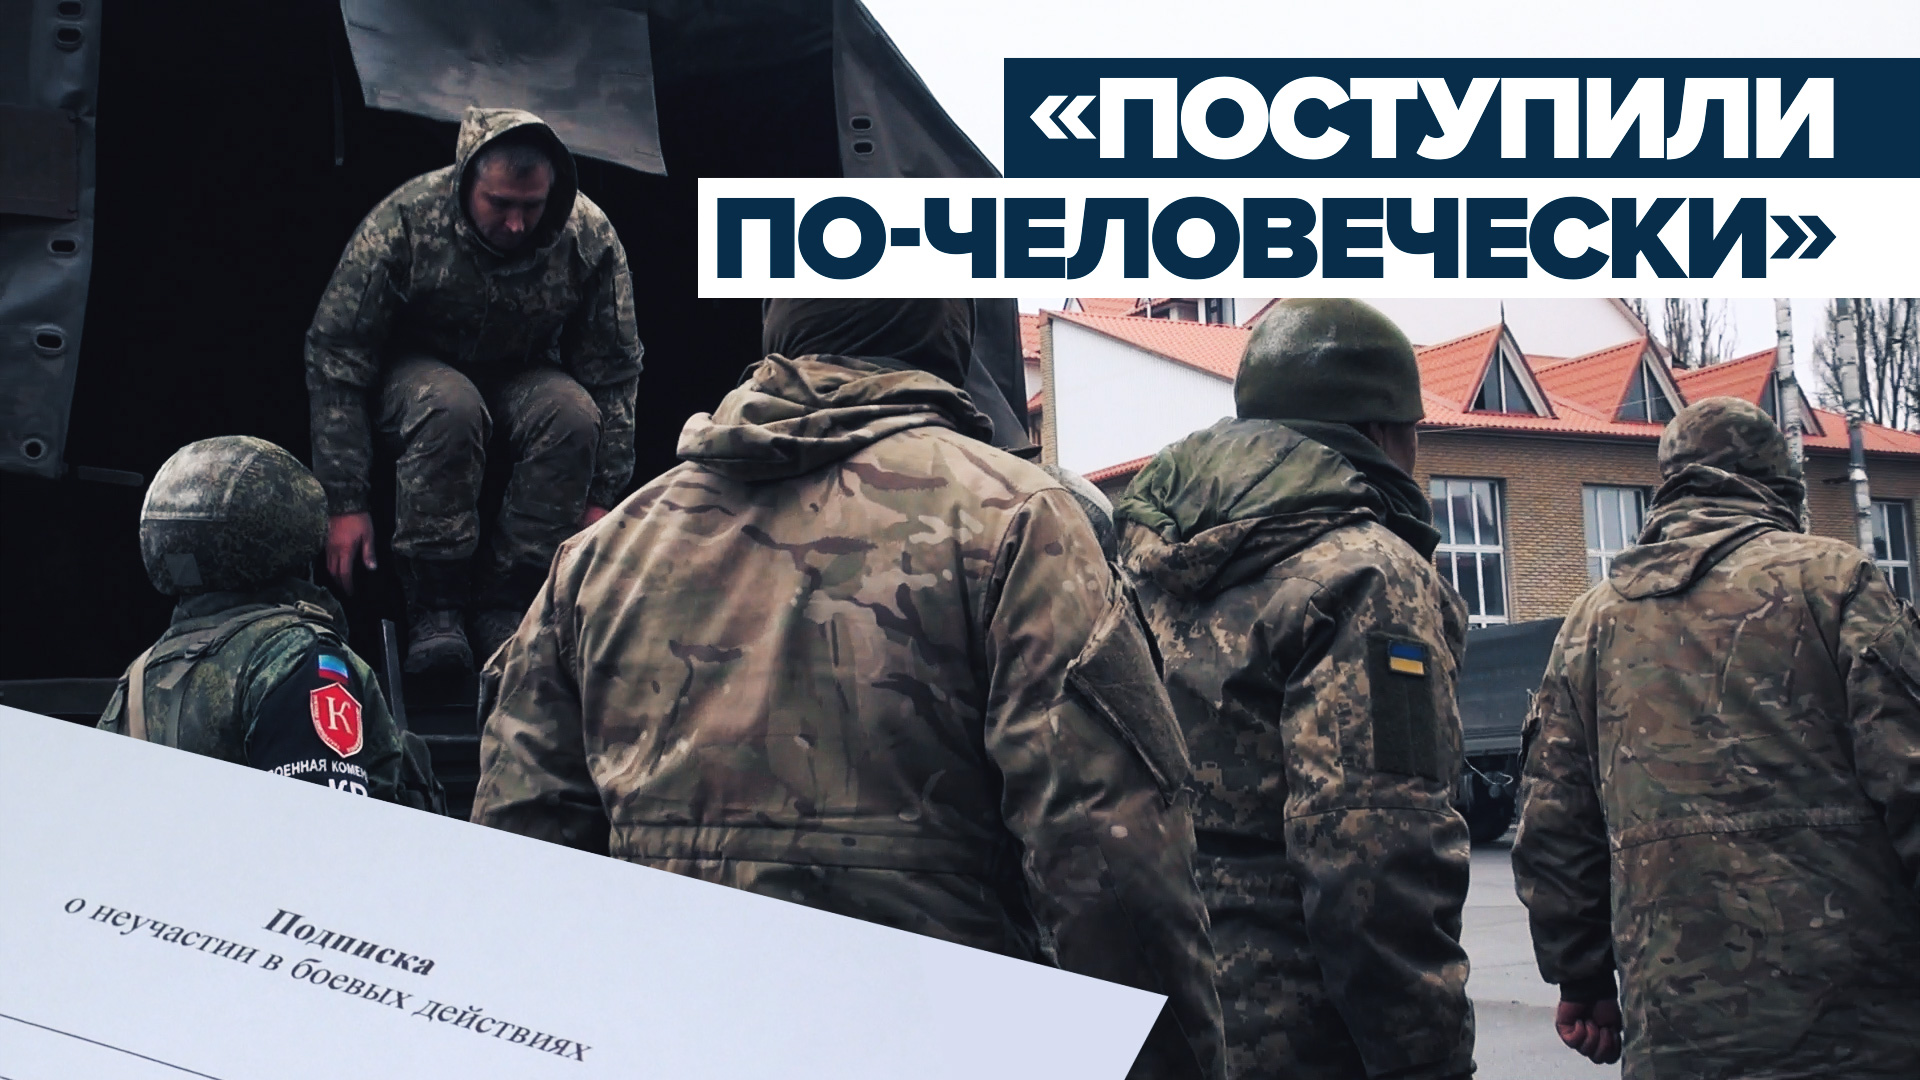 «Домой надо идти»: сложившие оружие украинские солдаты доставлены в расположение подразделением ЛНР